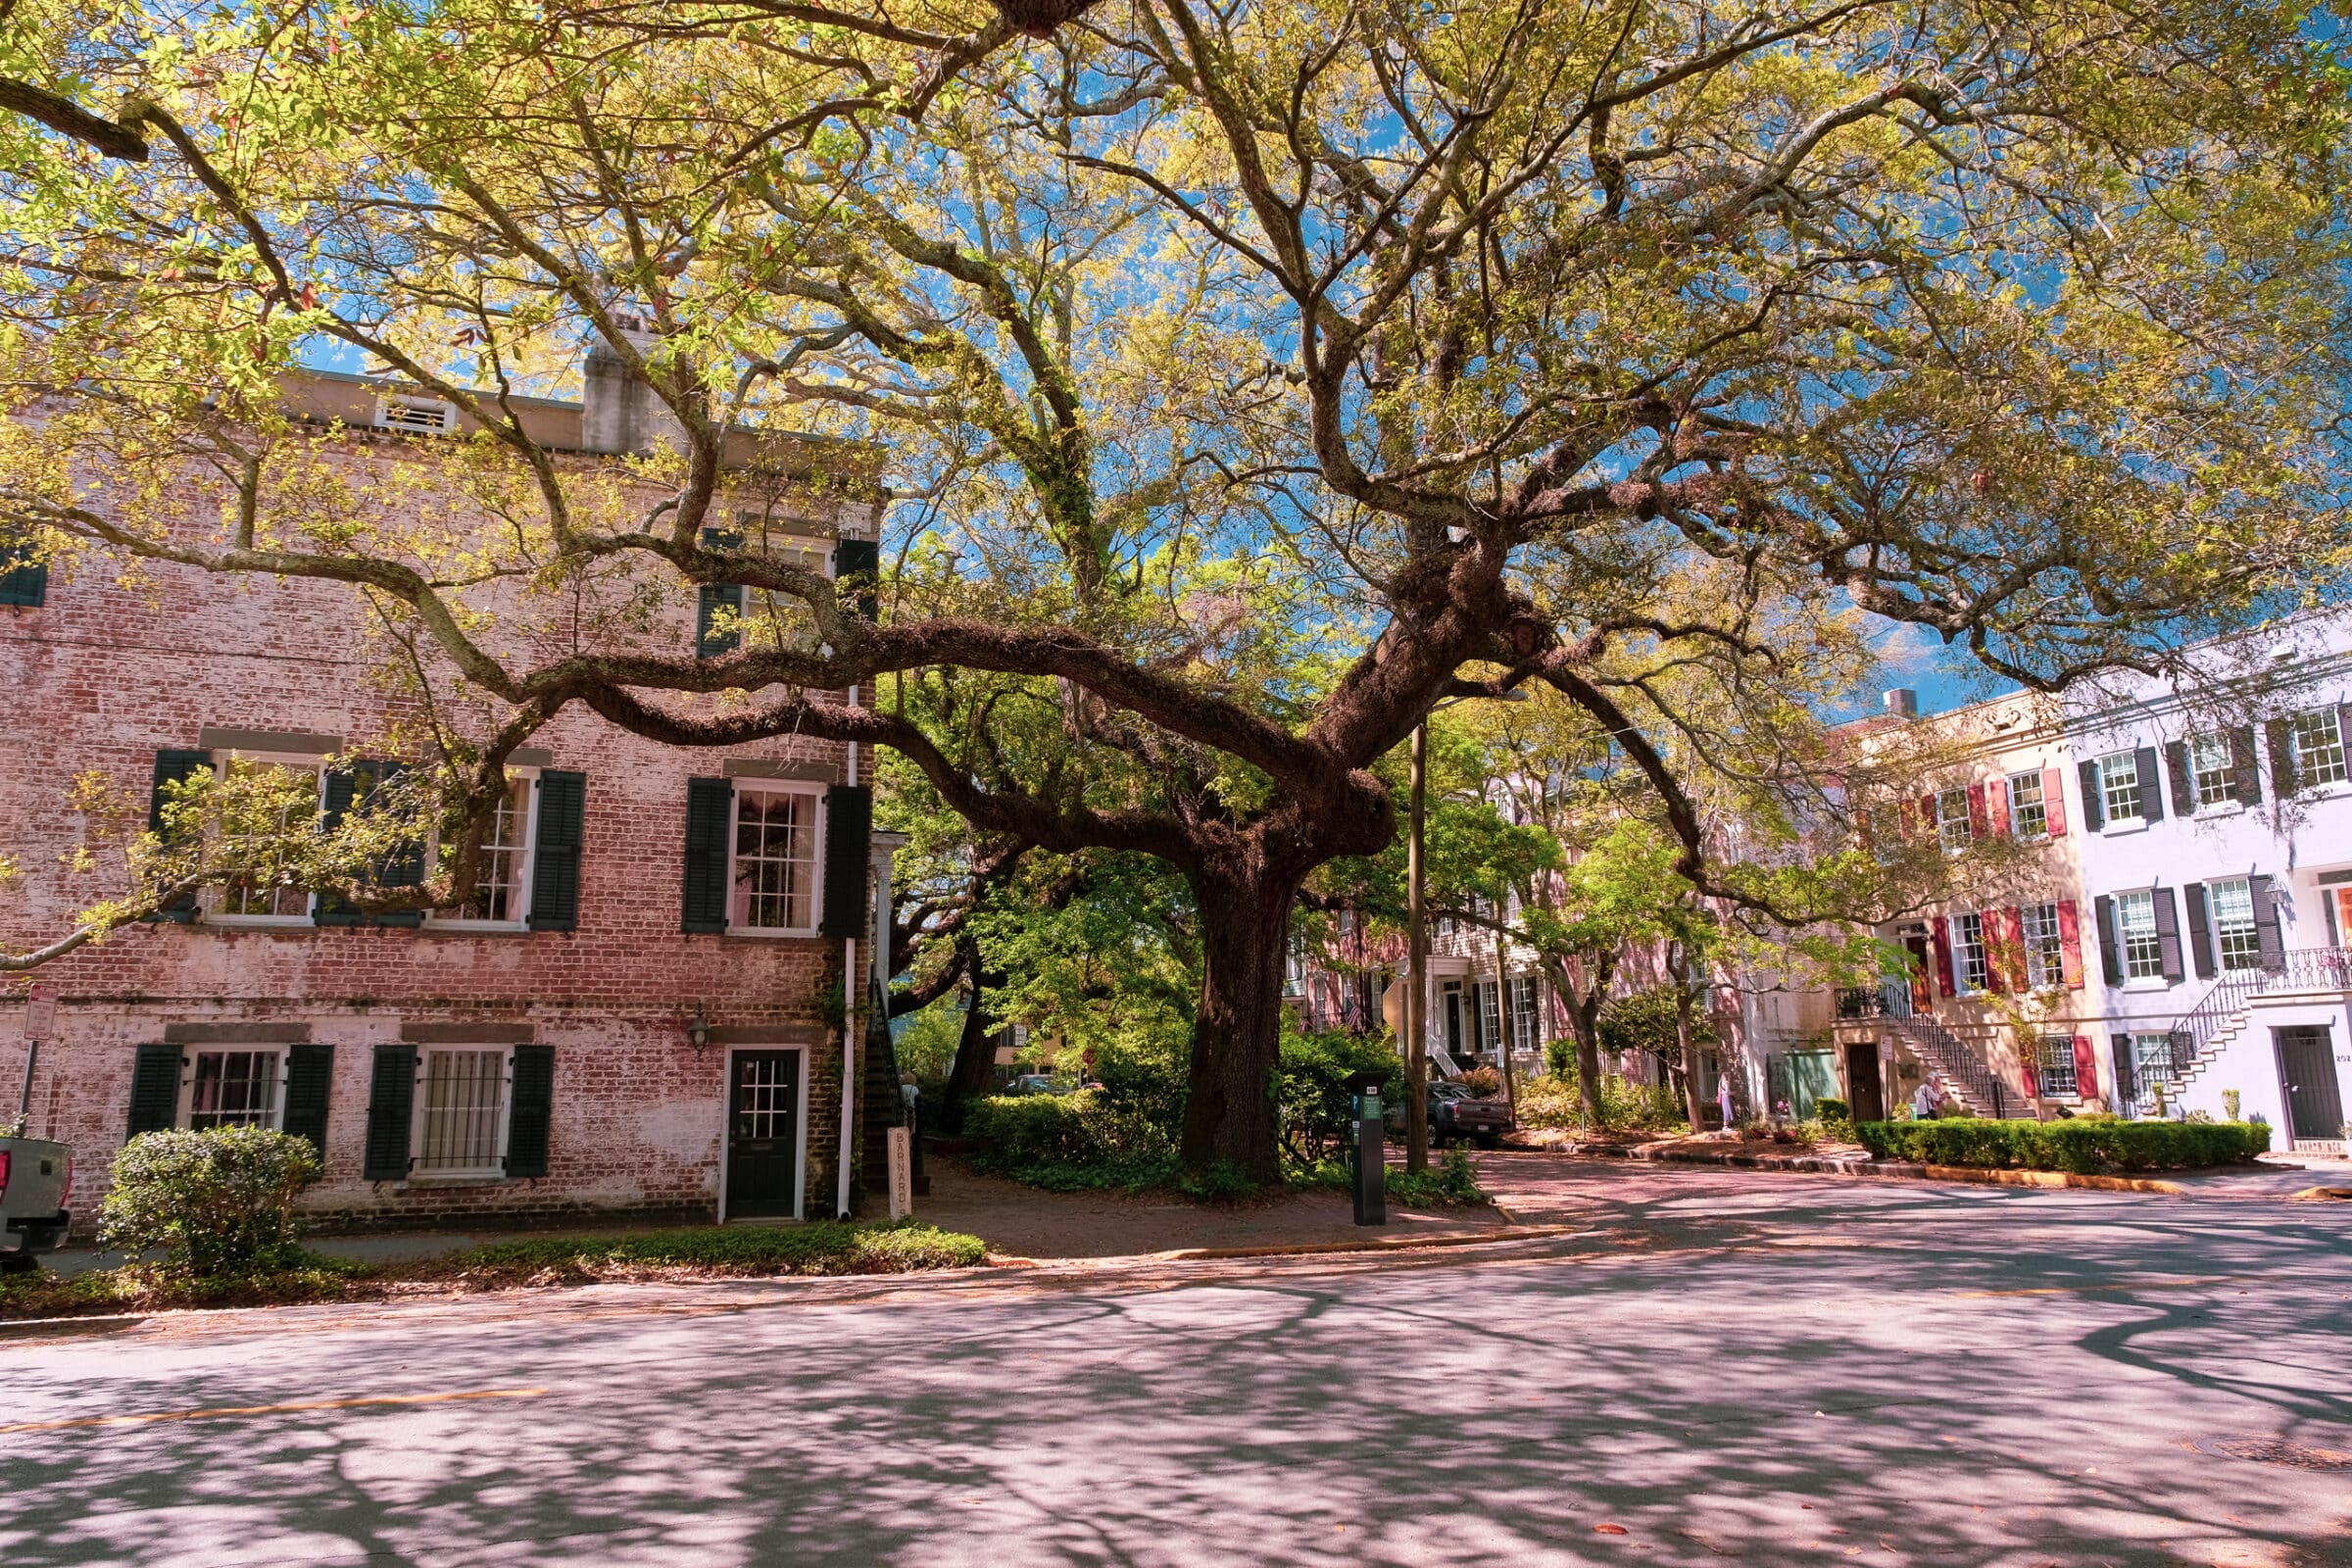 Prachtige, eeuwenoude bomen sieren hier de straten| Wat te doen + tips voor Savannah, Georgia